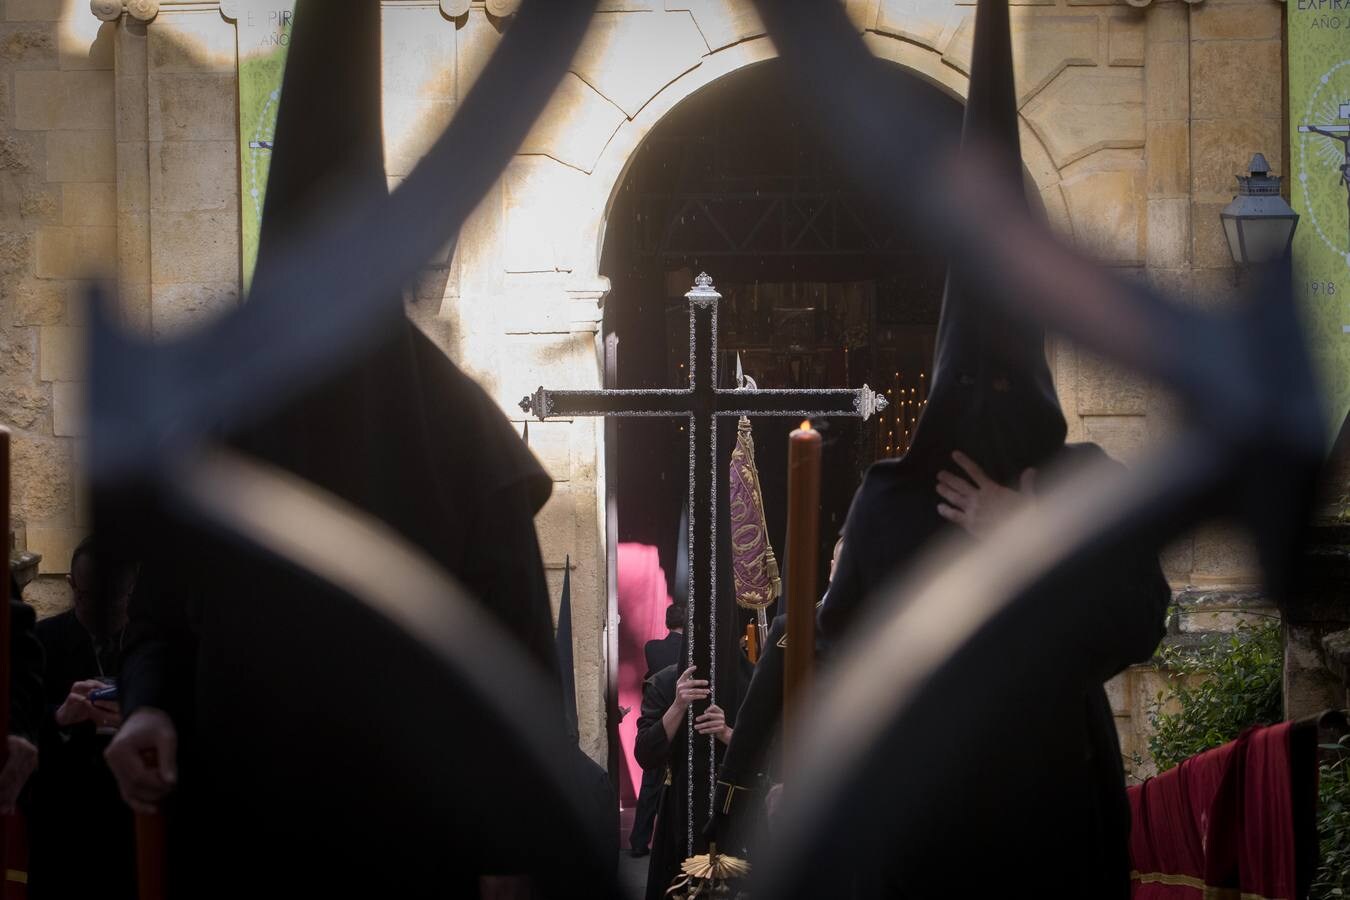 La cofradía de la Expiración de la Semana Santa de Córdoba 2018, en imágenes